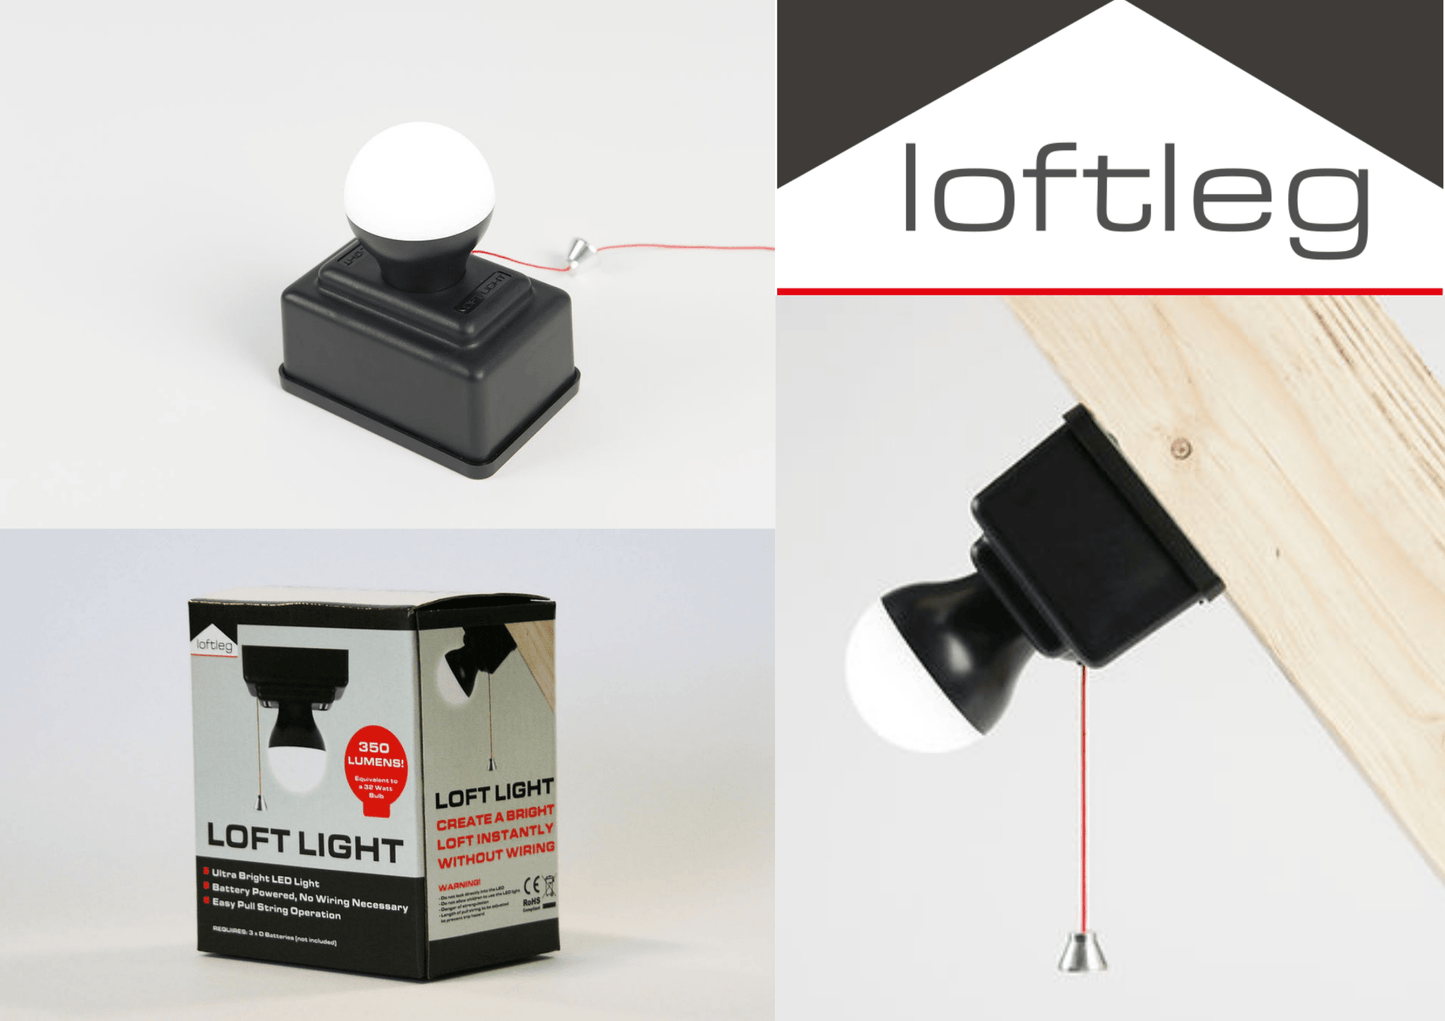 Loftleg Loft Light Battery Powered LED